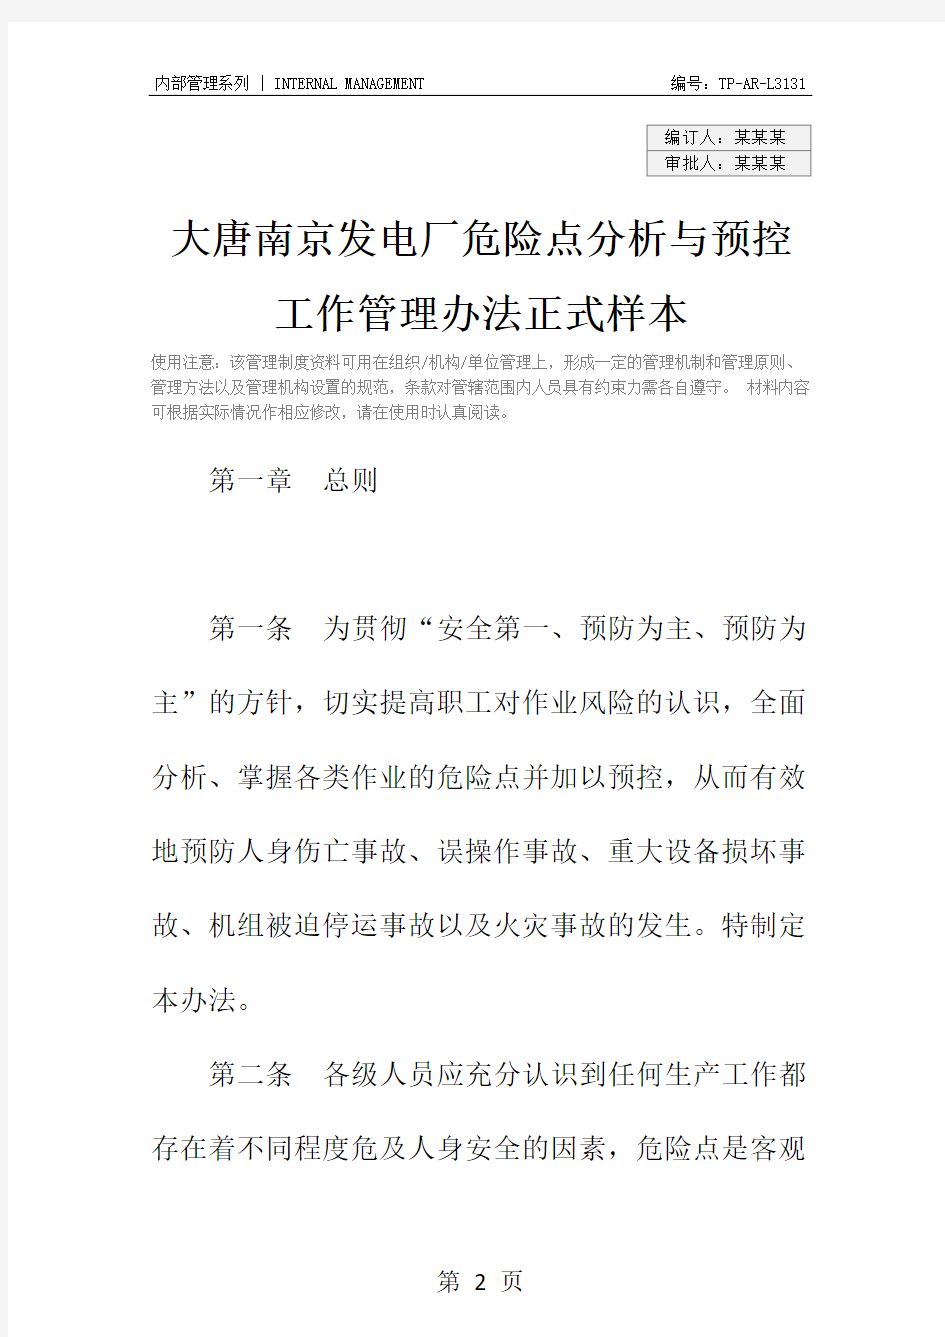 大唐南京发电厂危险点分析与预控工作管理办法正式样本